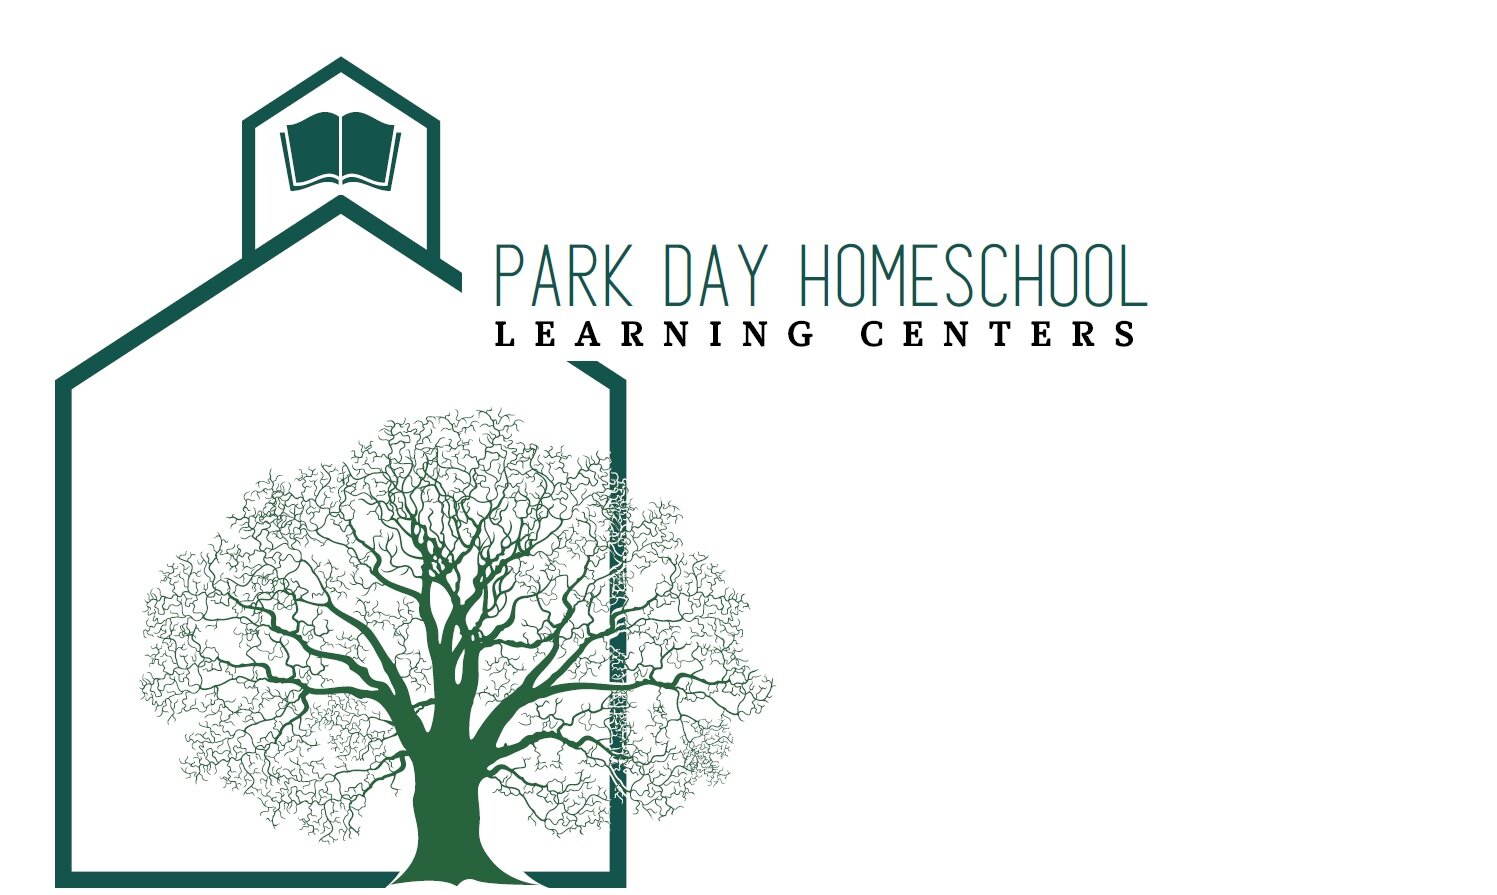 Park Day HomeSchool Learning Center